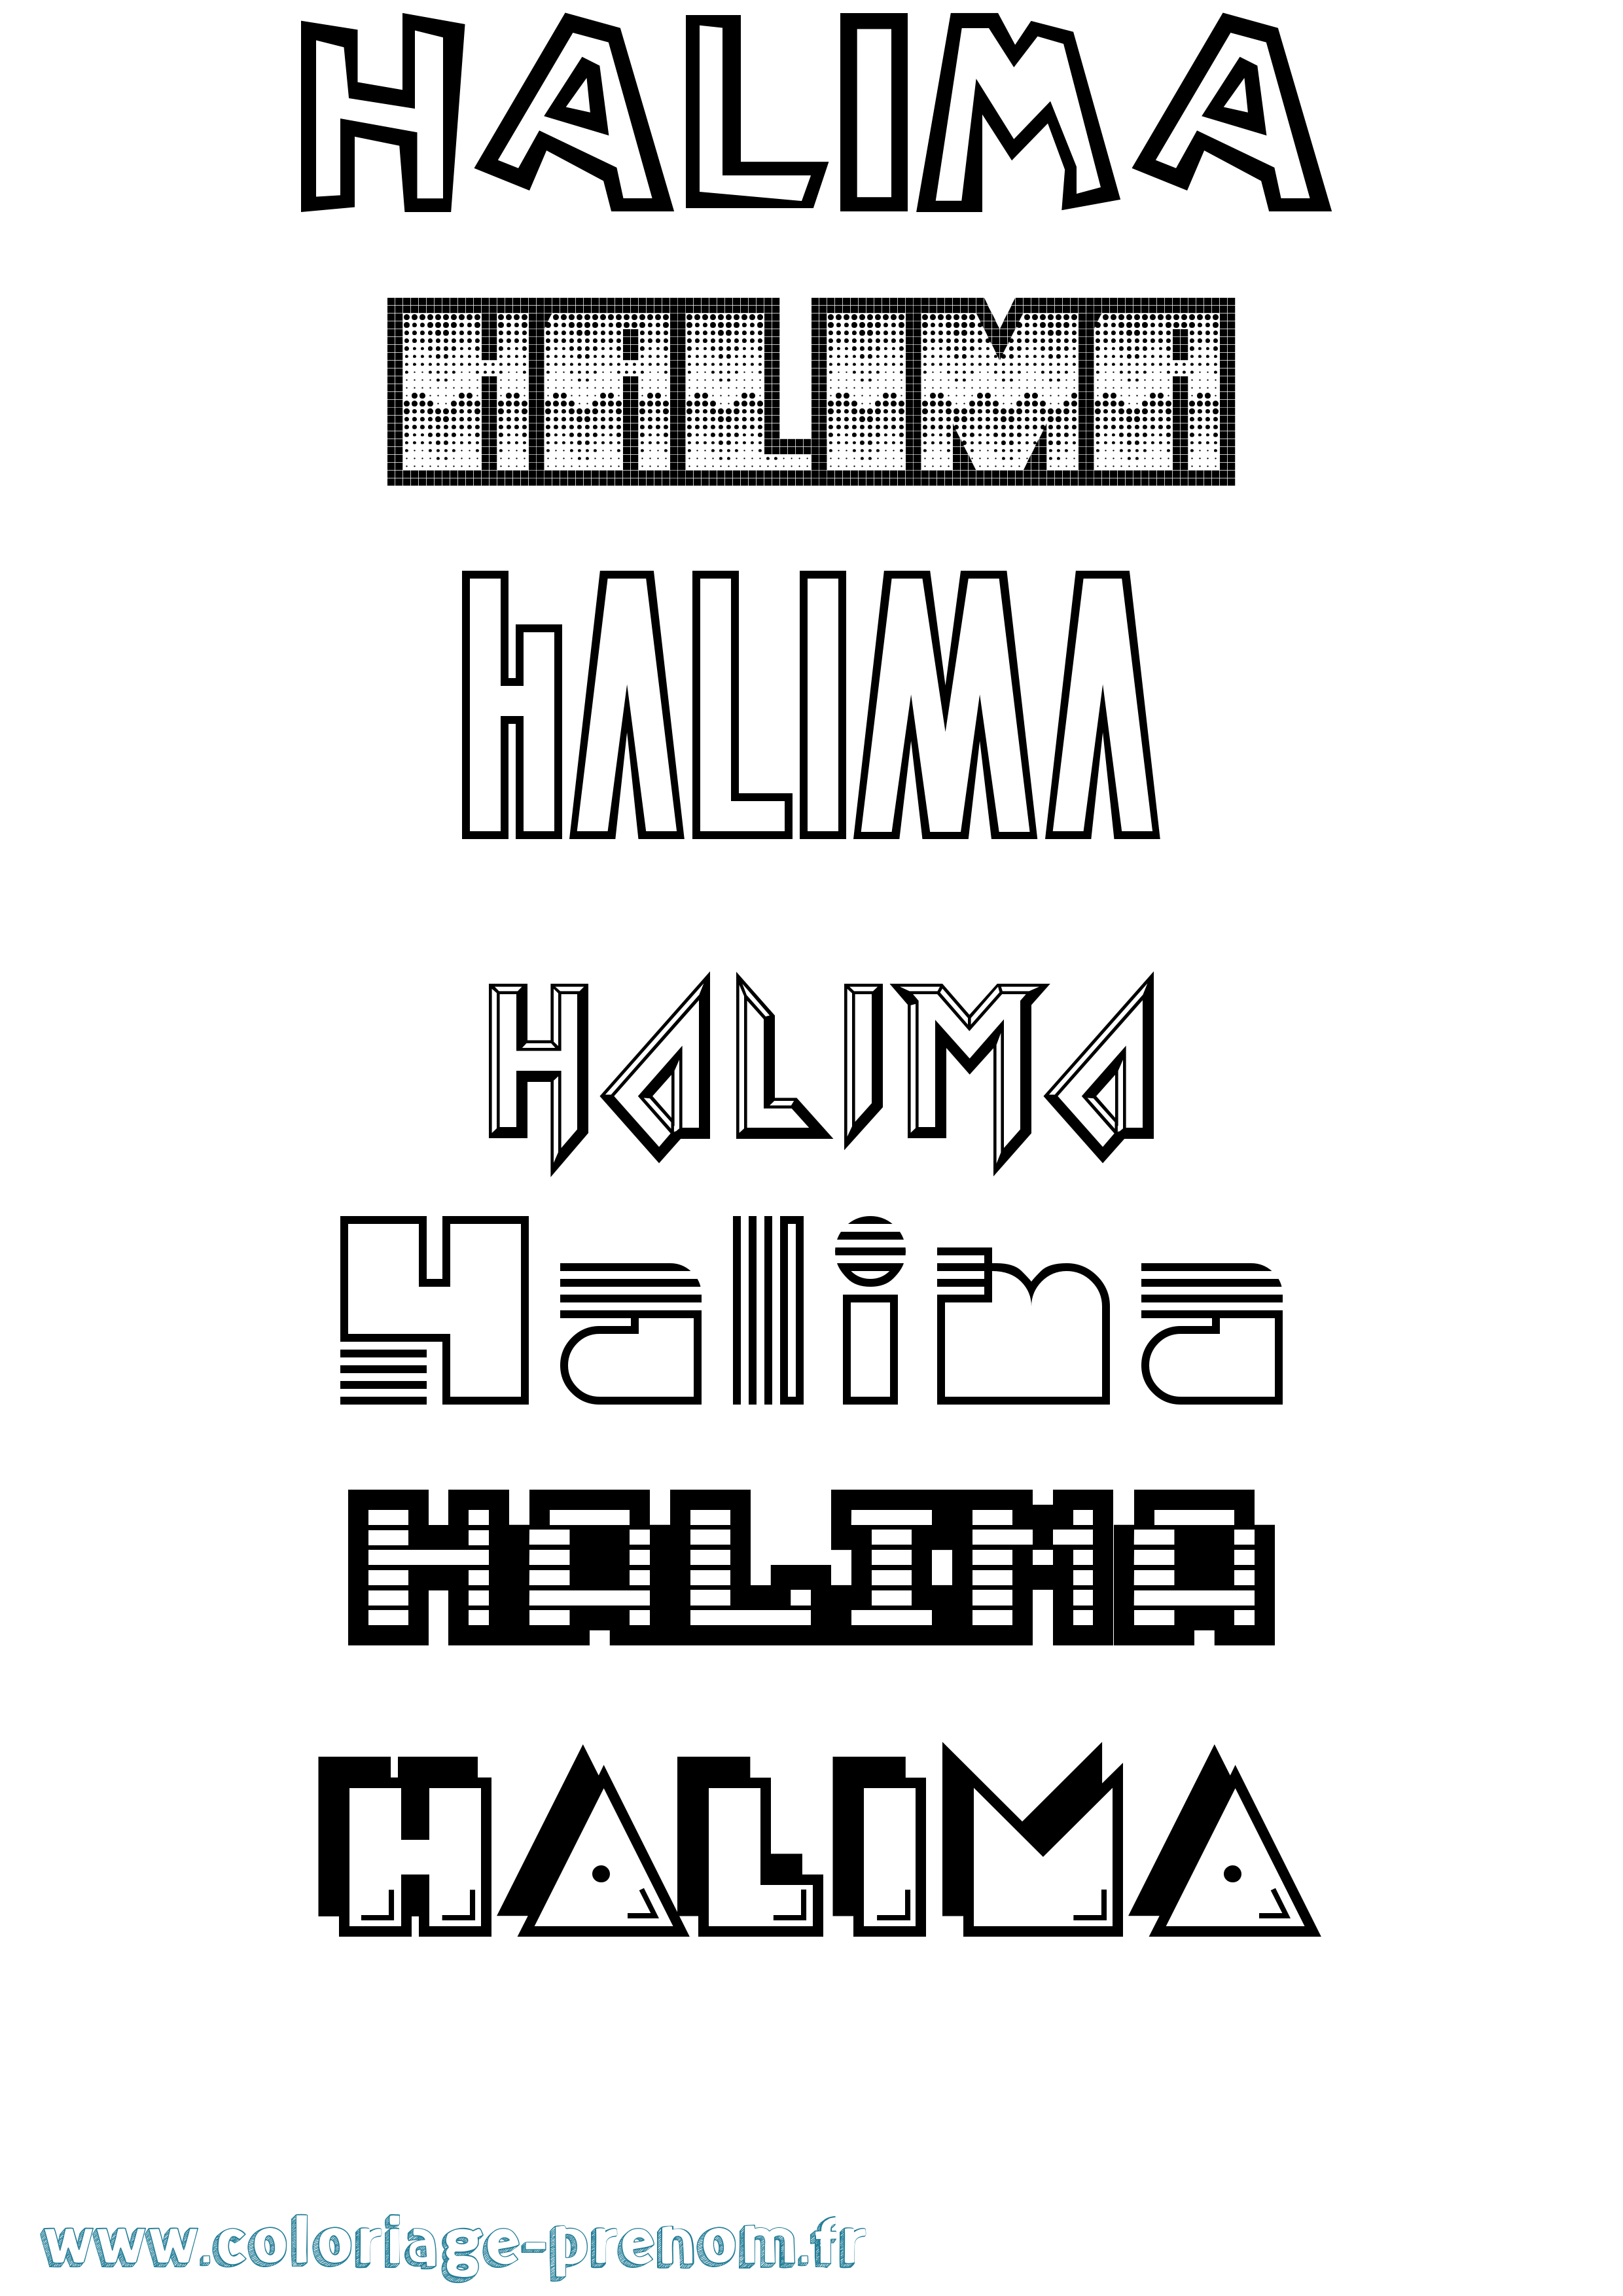 Coloriage prénom Halima